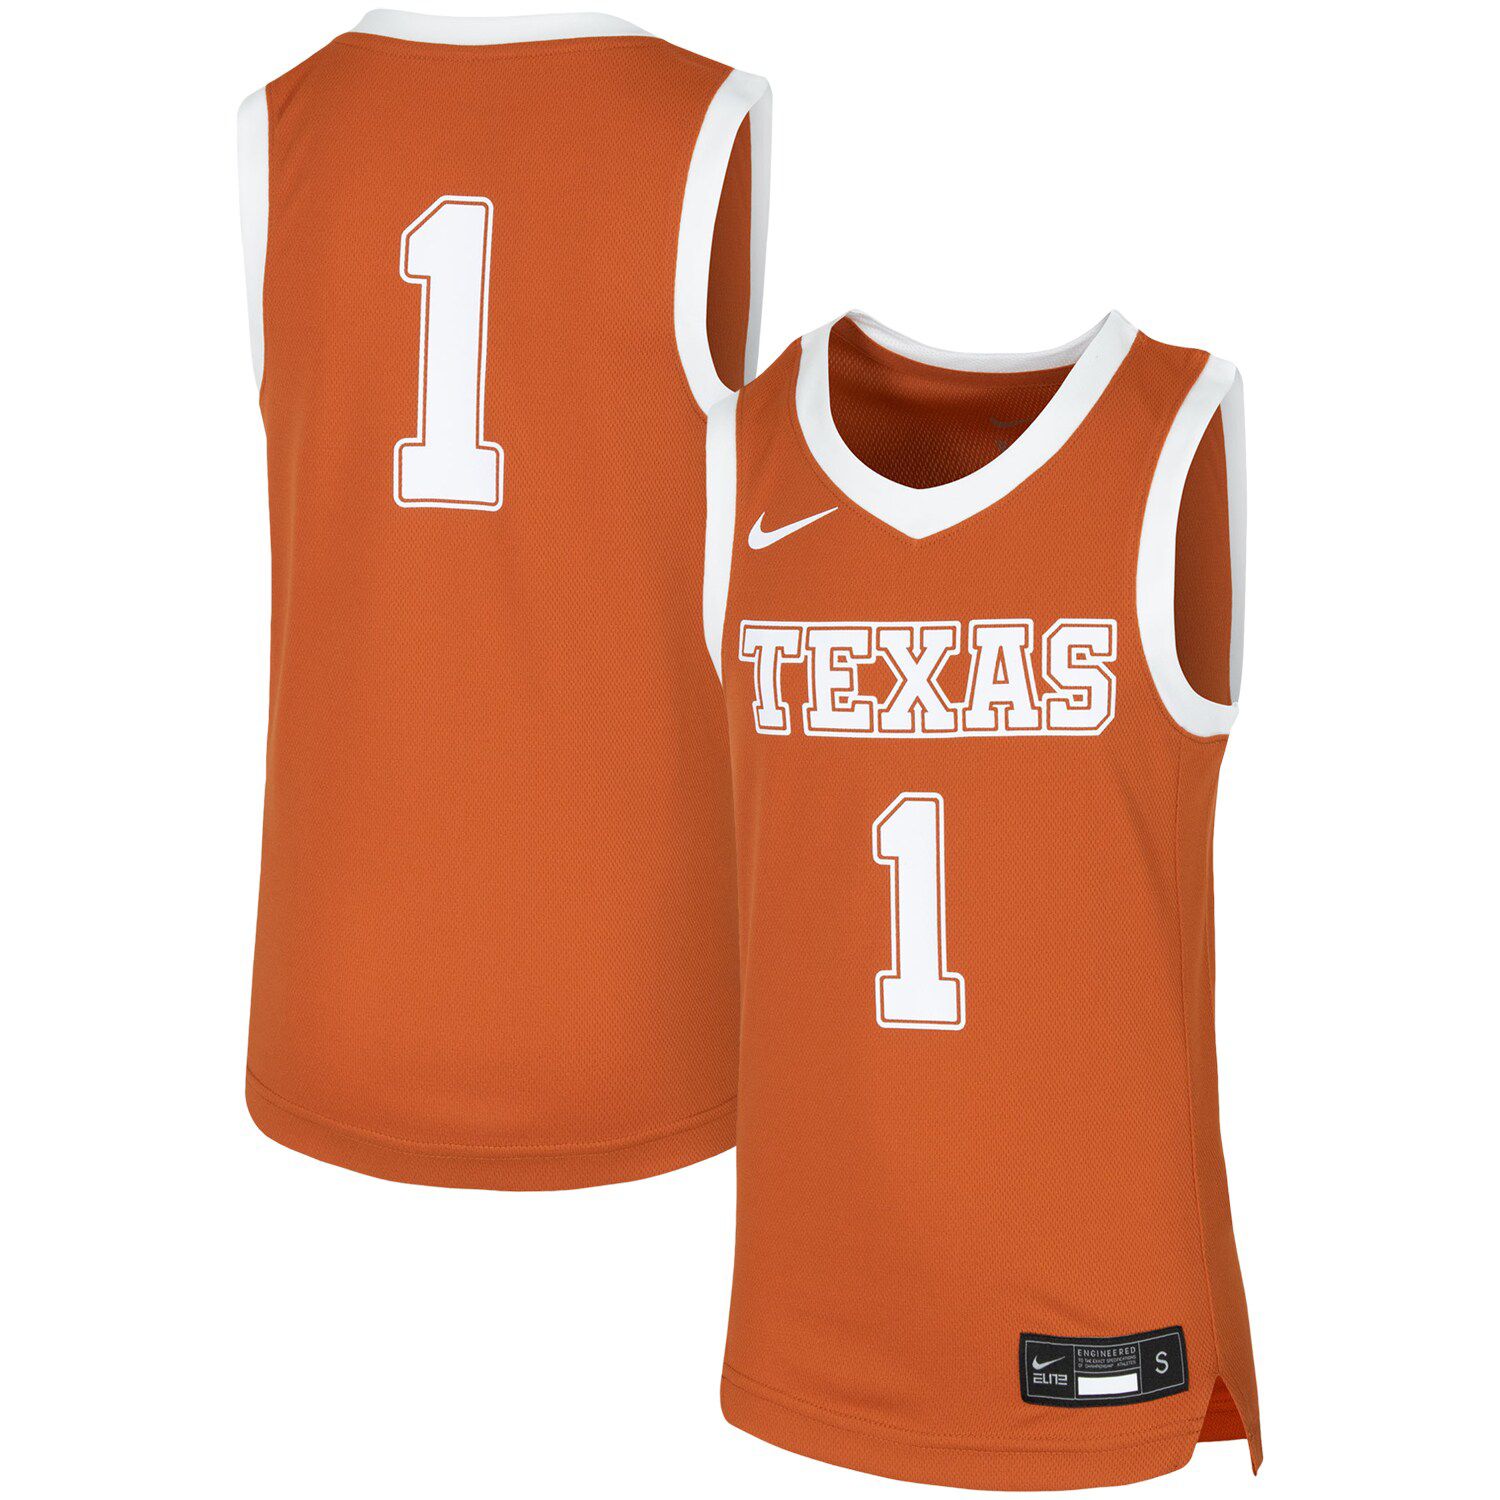 longhorns basketball jersey